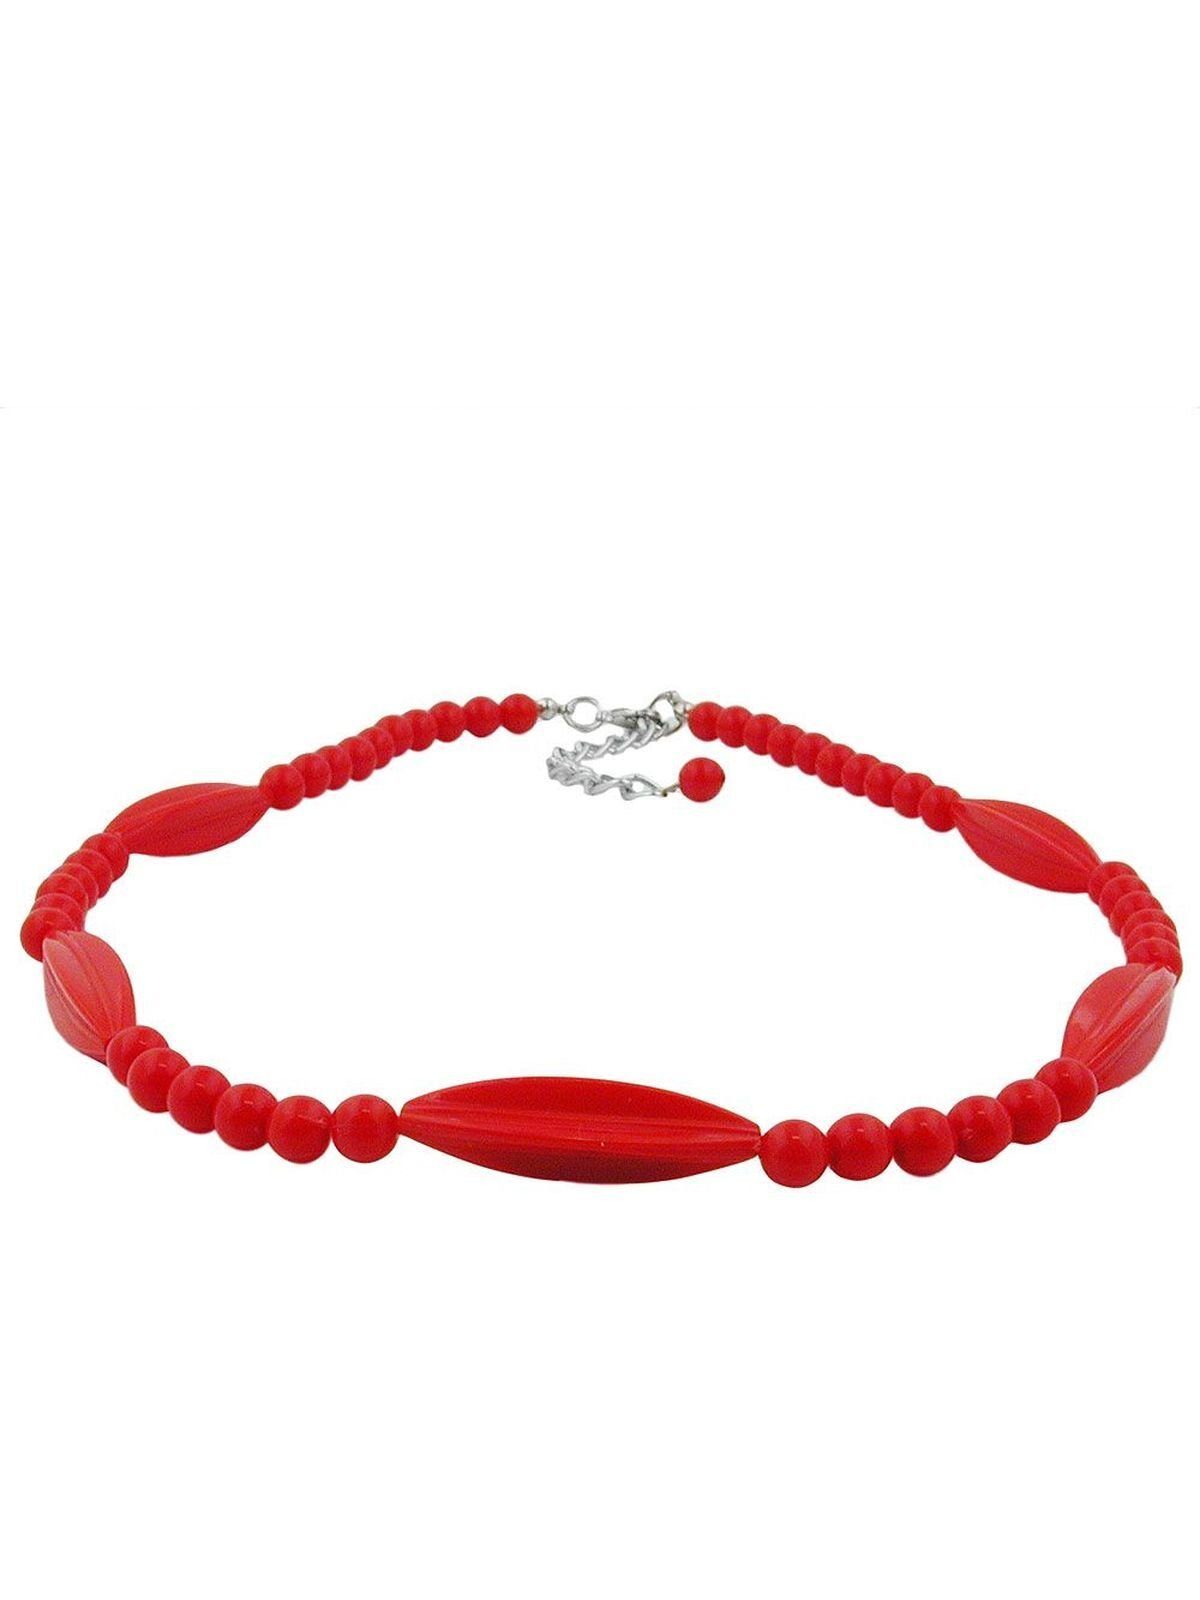 Rillenolive 42cm Verschluss (1-tlg) Perle Gallay Perlenkette silberfarbig Kunststoff rot und